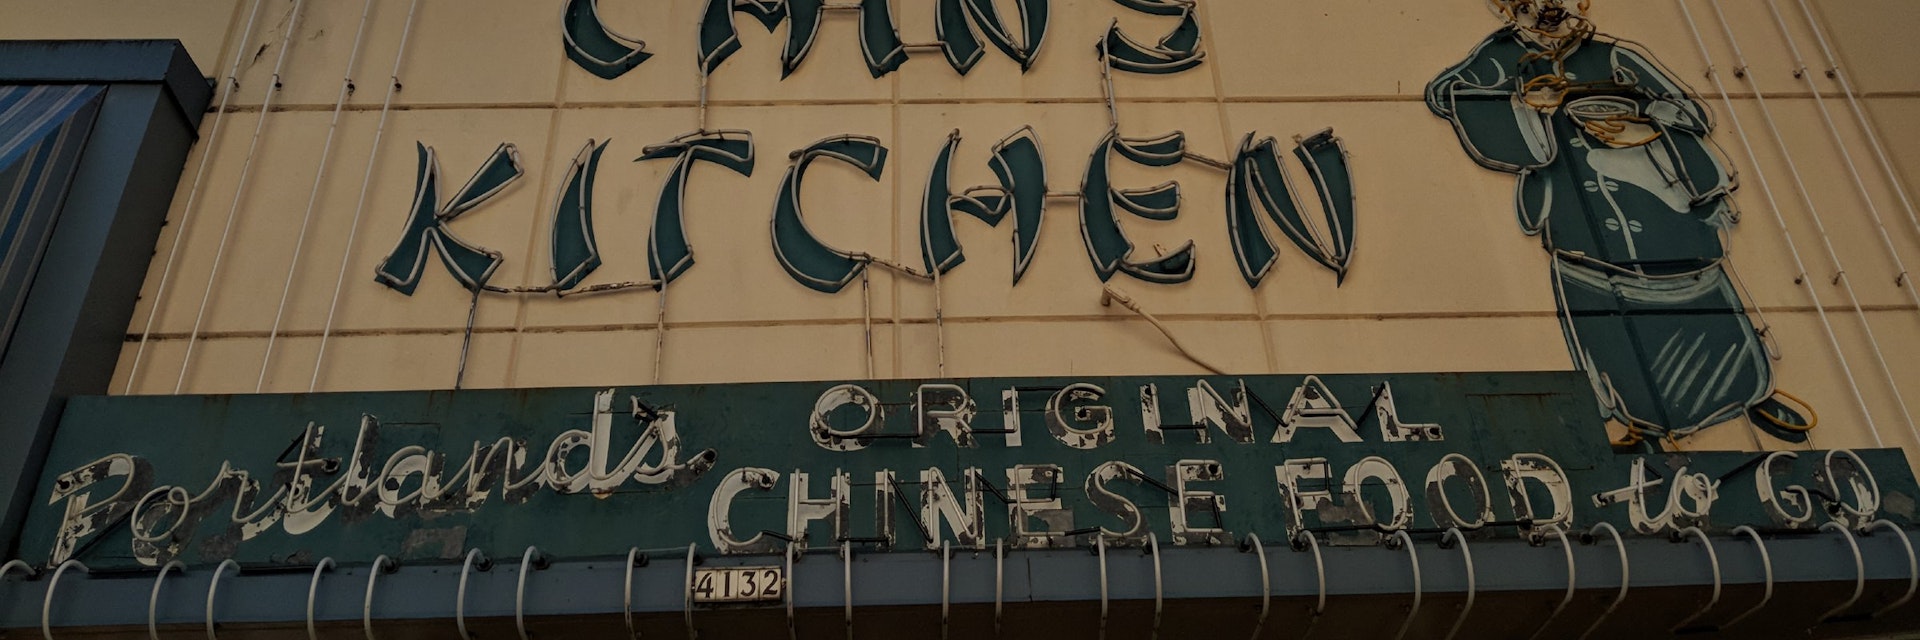 Exterior of Chin's Kitchen restaurant